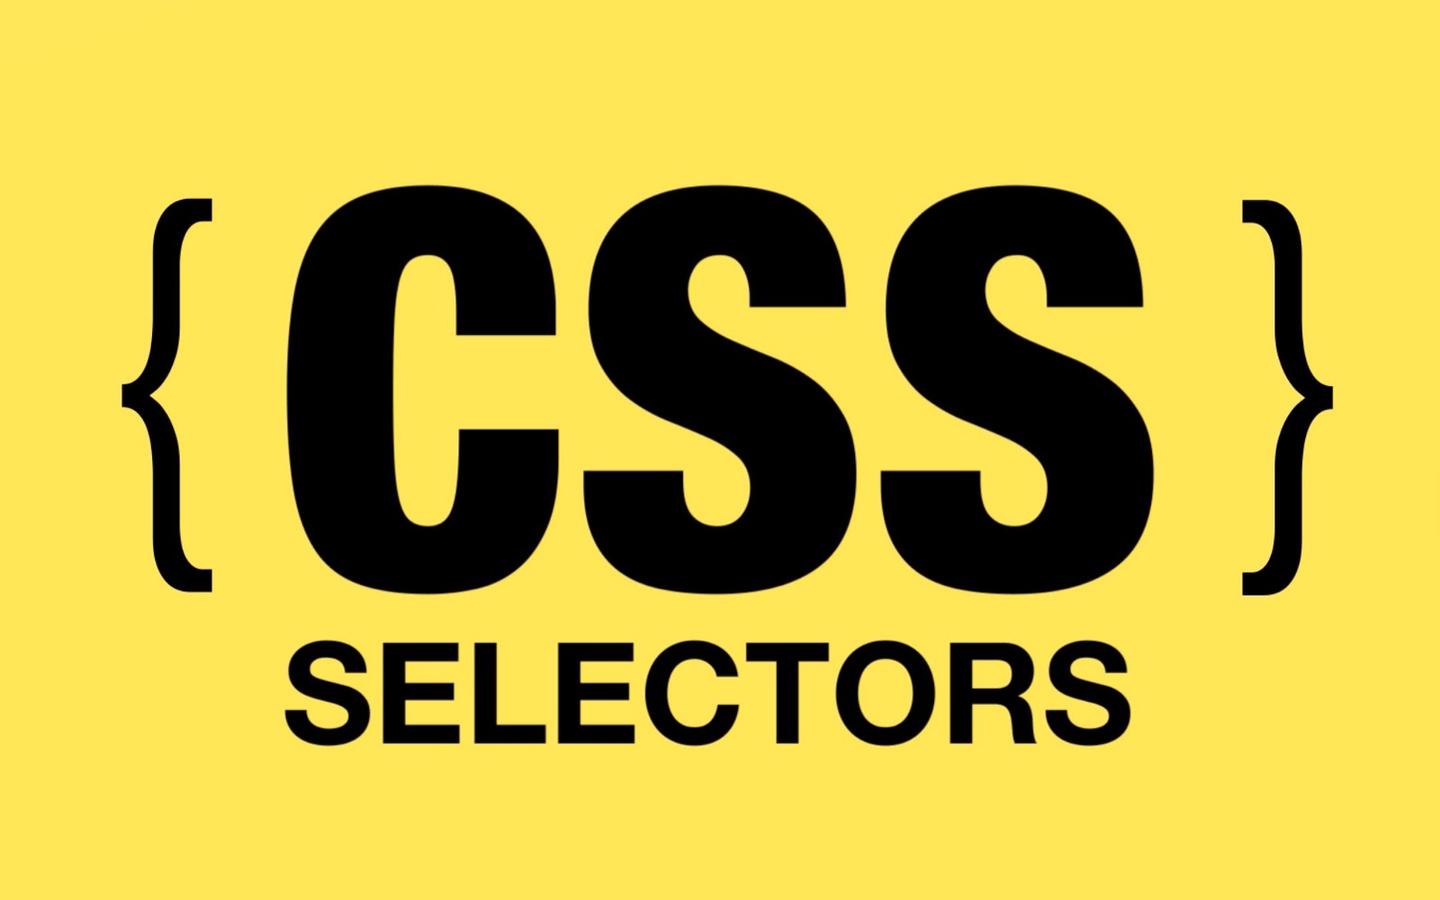 前端杂谈: CSS 权重 (Specificity)